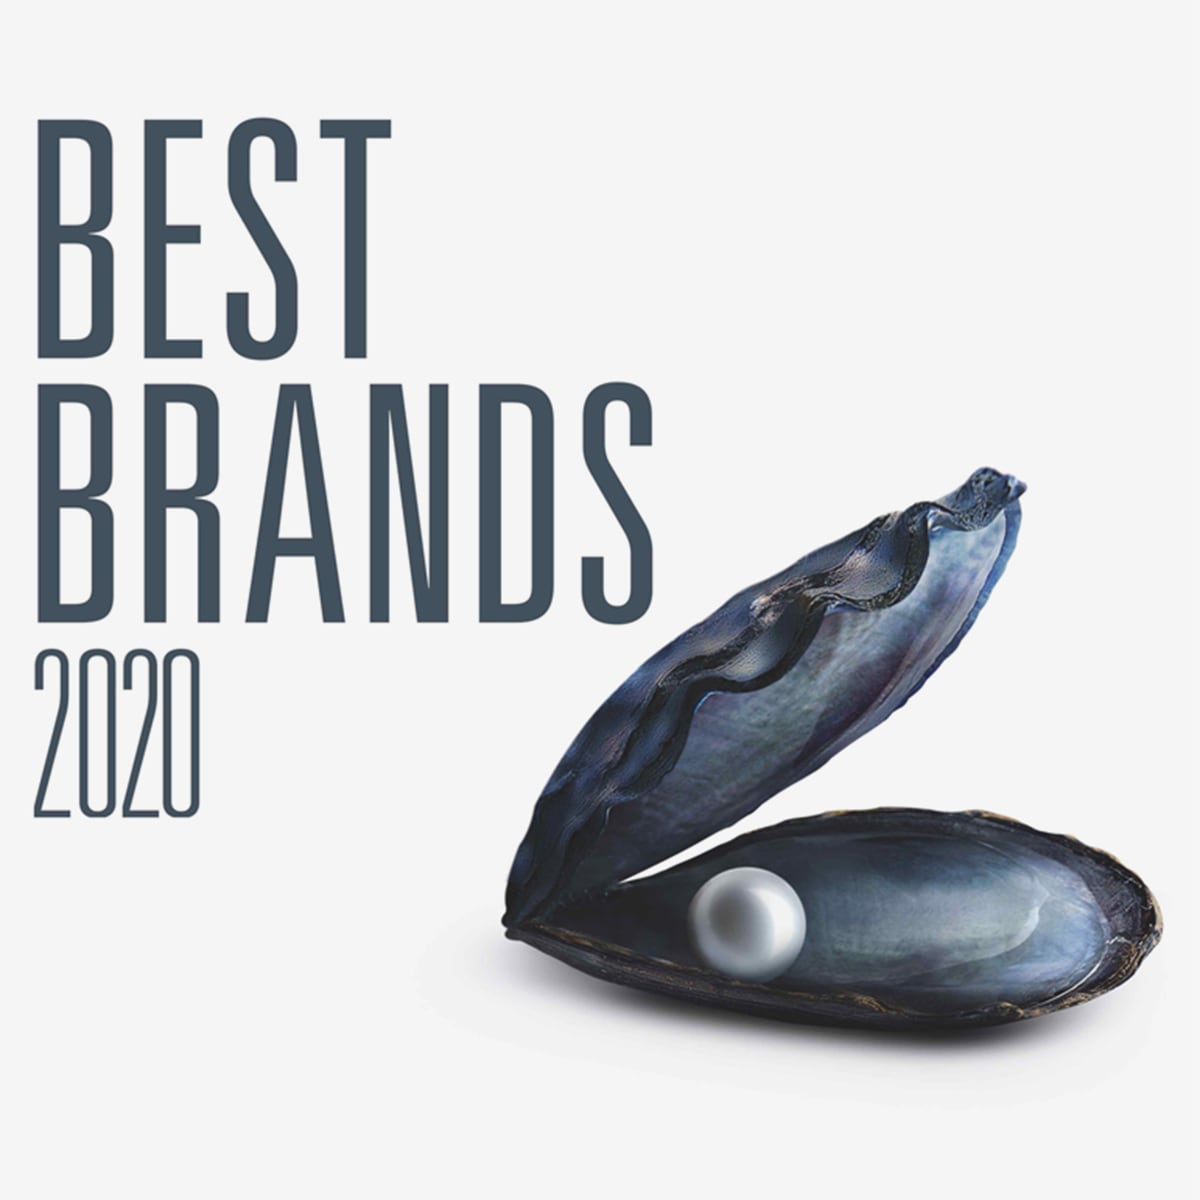 Best Brands 2020